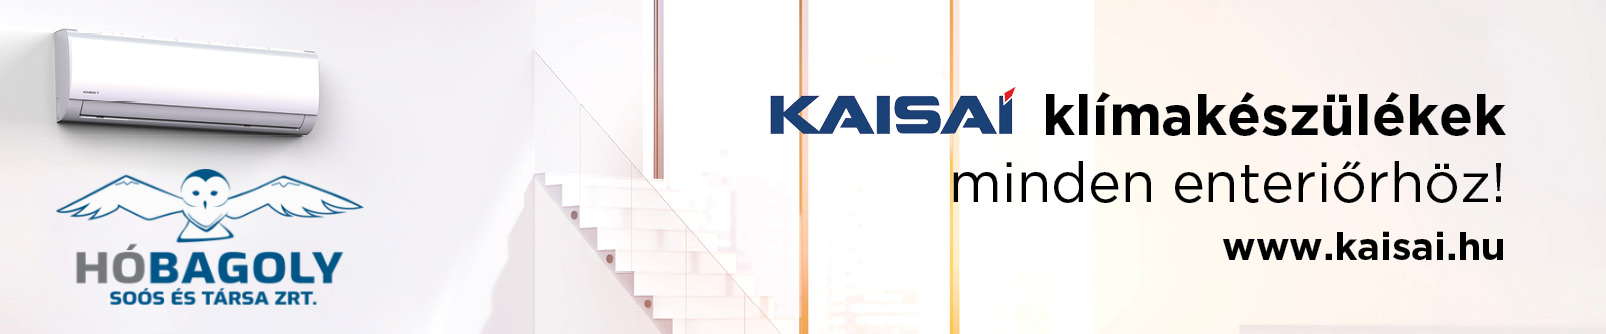 www.kaisai.hu